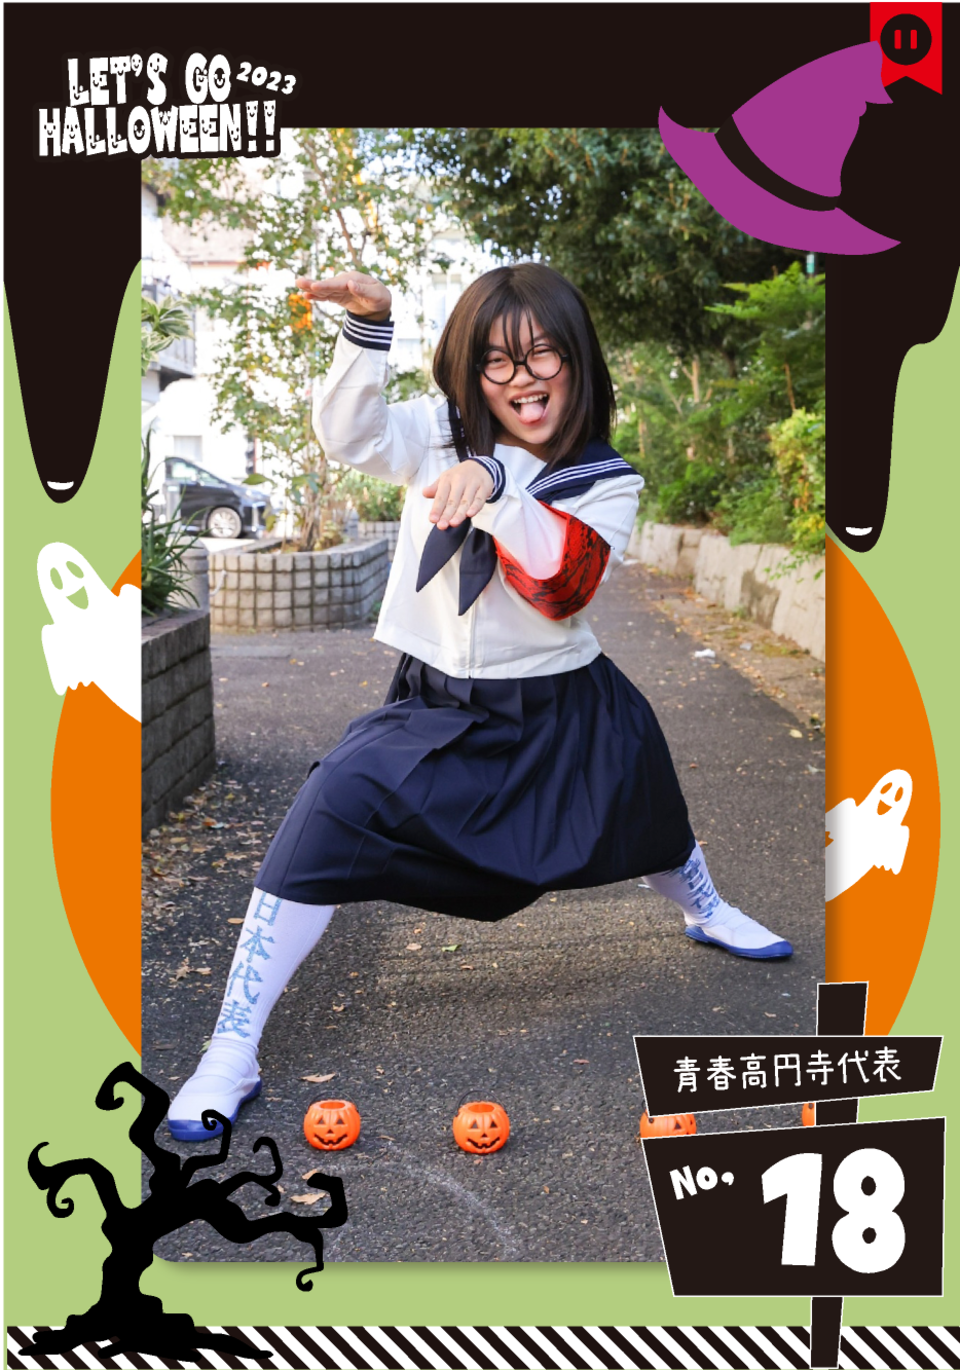 青春高円寺代表ハロウィン仮装新しいリーダー